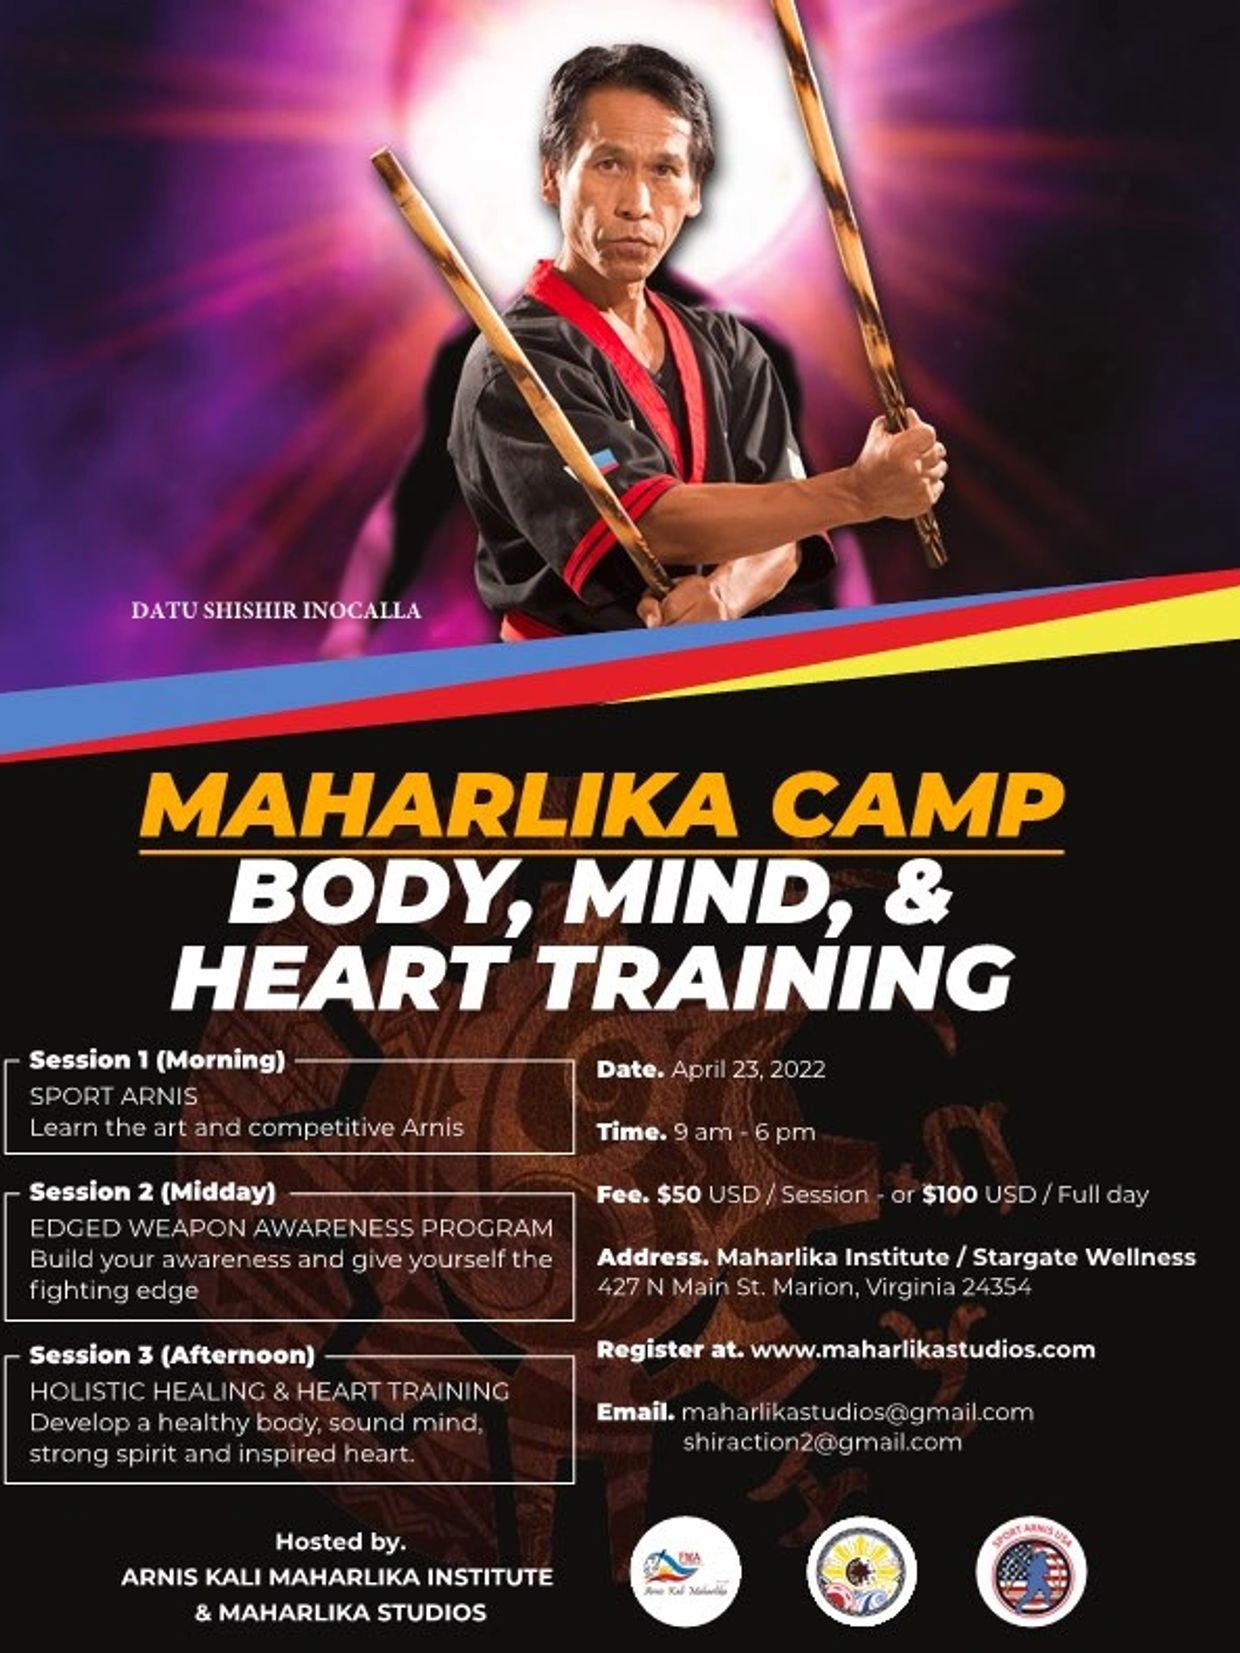 Maharlika Camp
Body, Mind & Heart Training